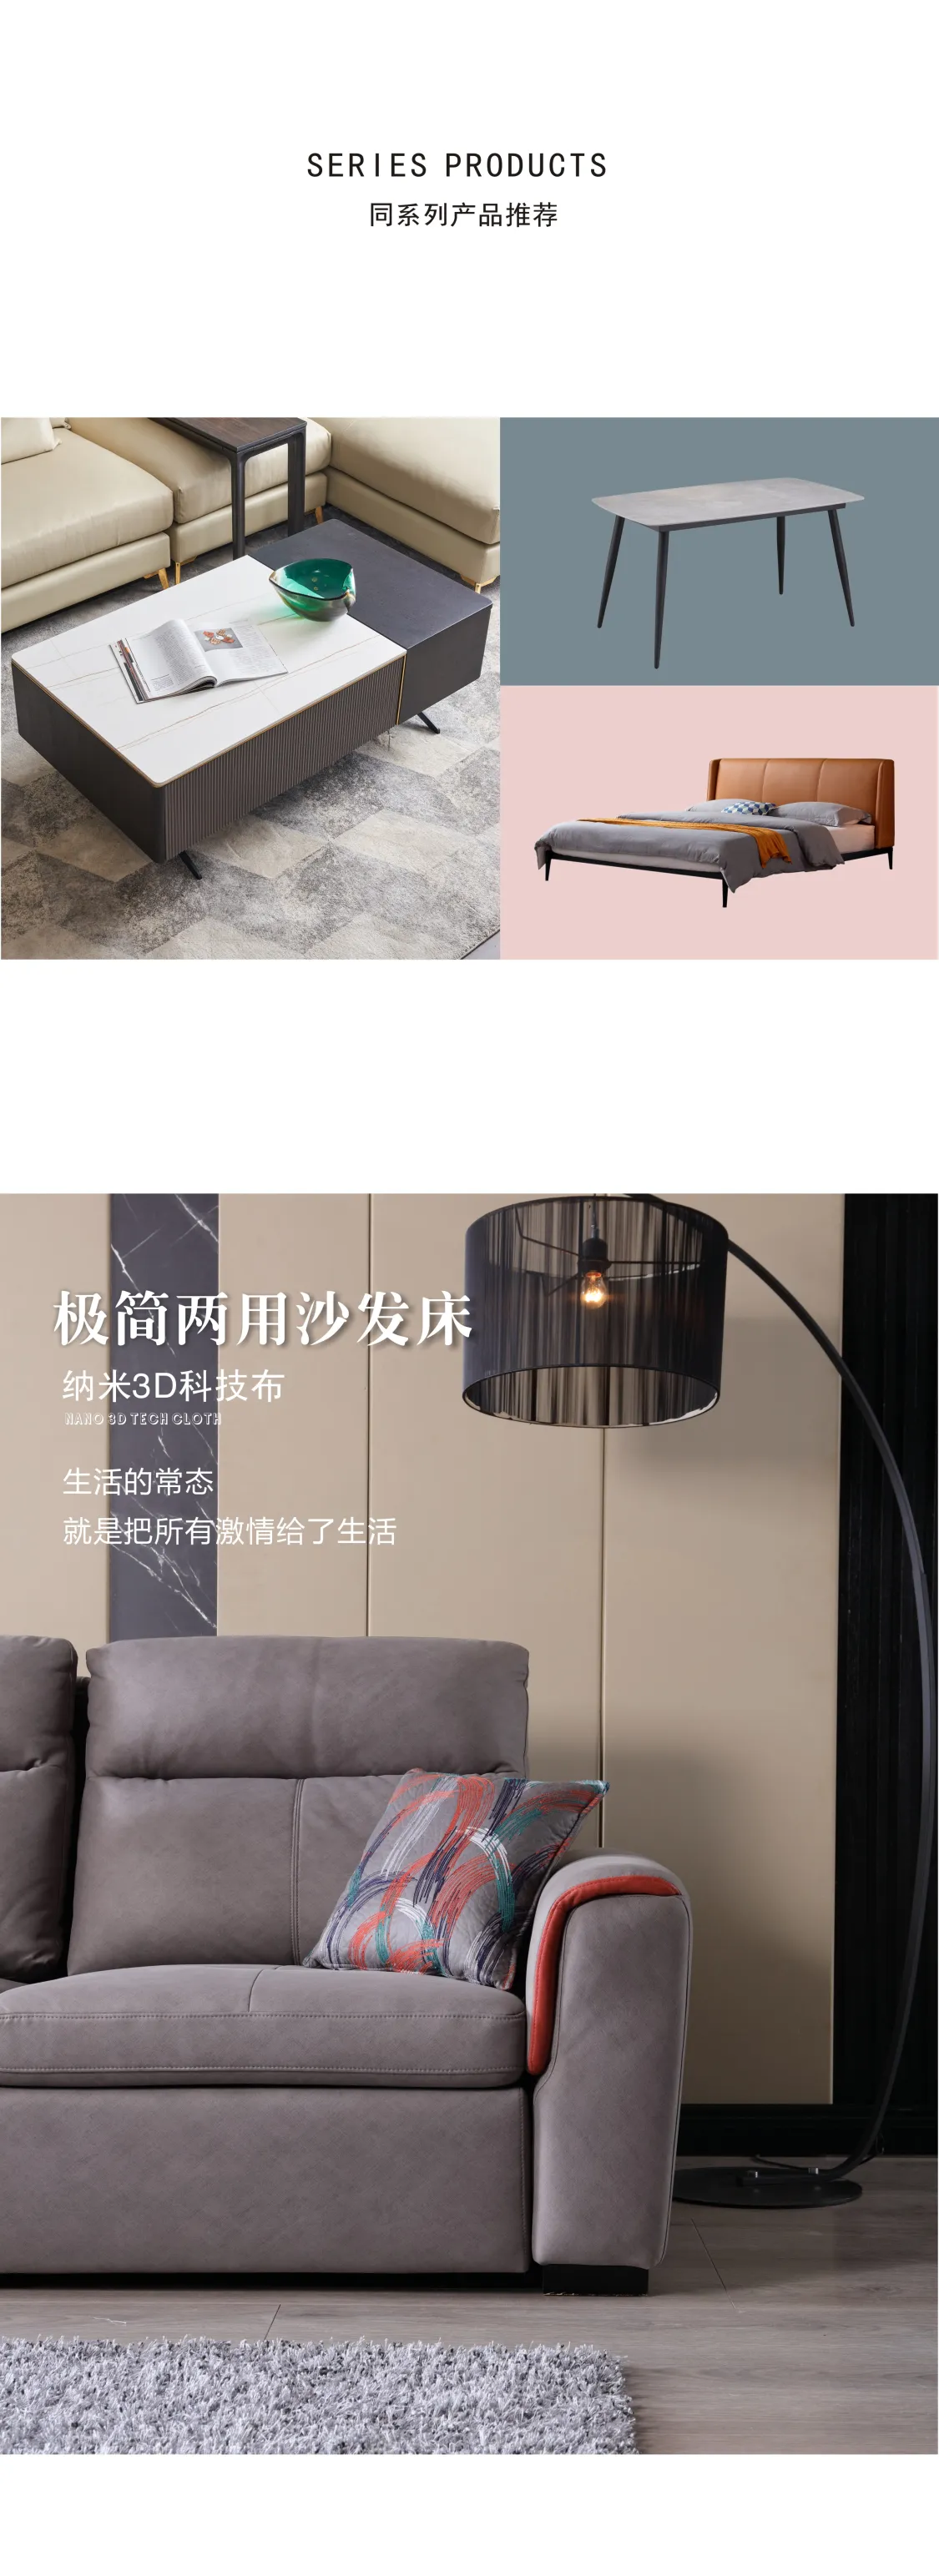 Jioon简欧 现代极简风格 艾意系列沙发 LBO-506(图4)